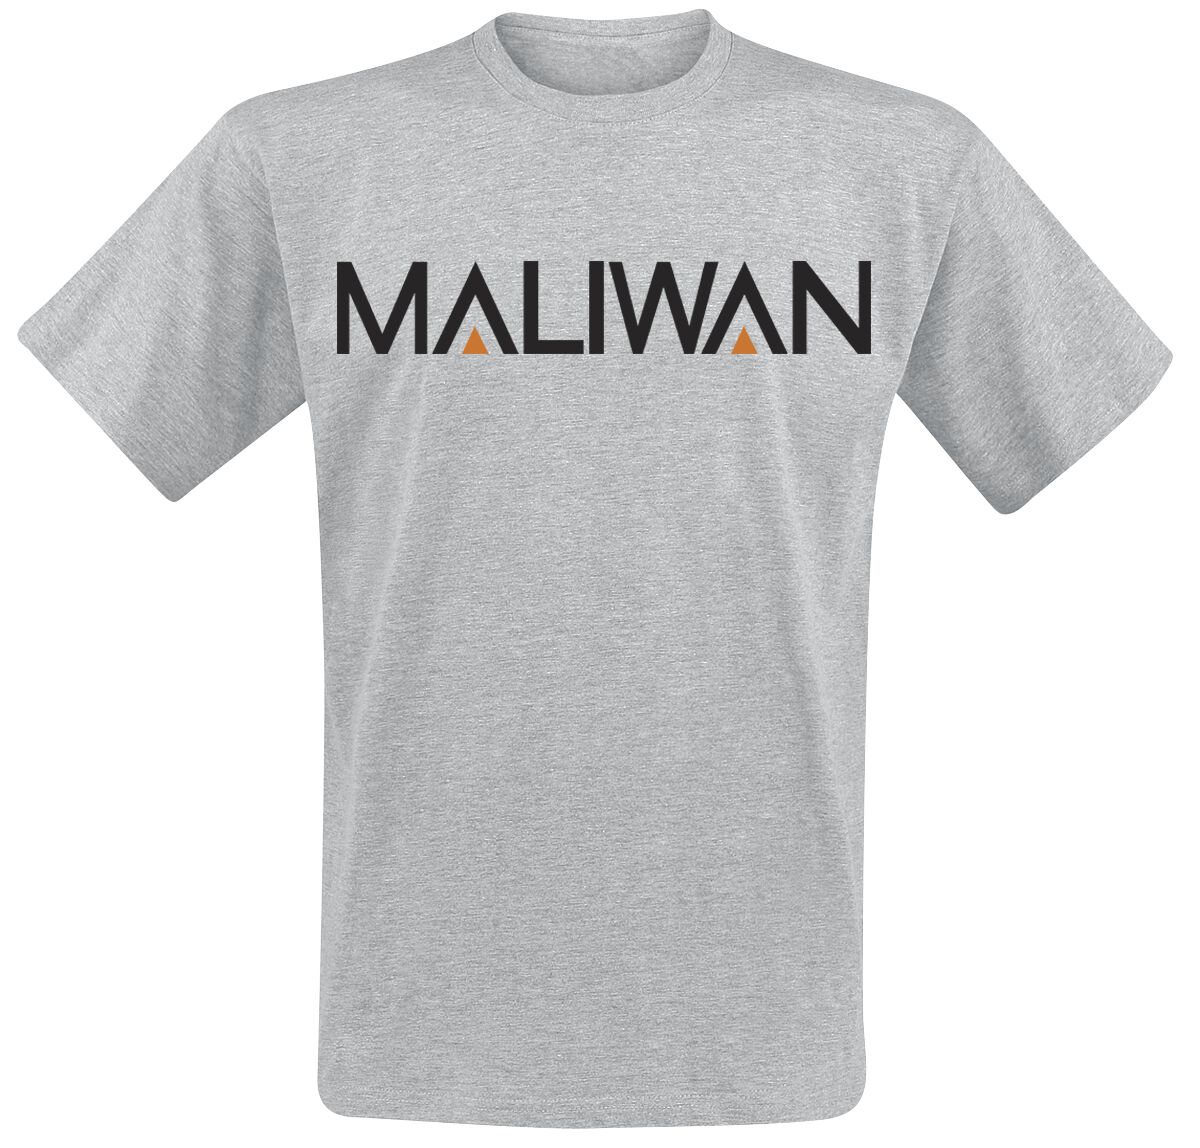 Borderlands - Gaming T-Shirt - 3 - Maliwan - S bis XXL - für Männer - Größe S - grau meliert  - EMP exklusives Merchandise!